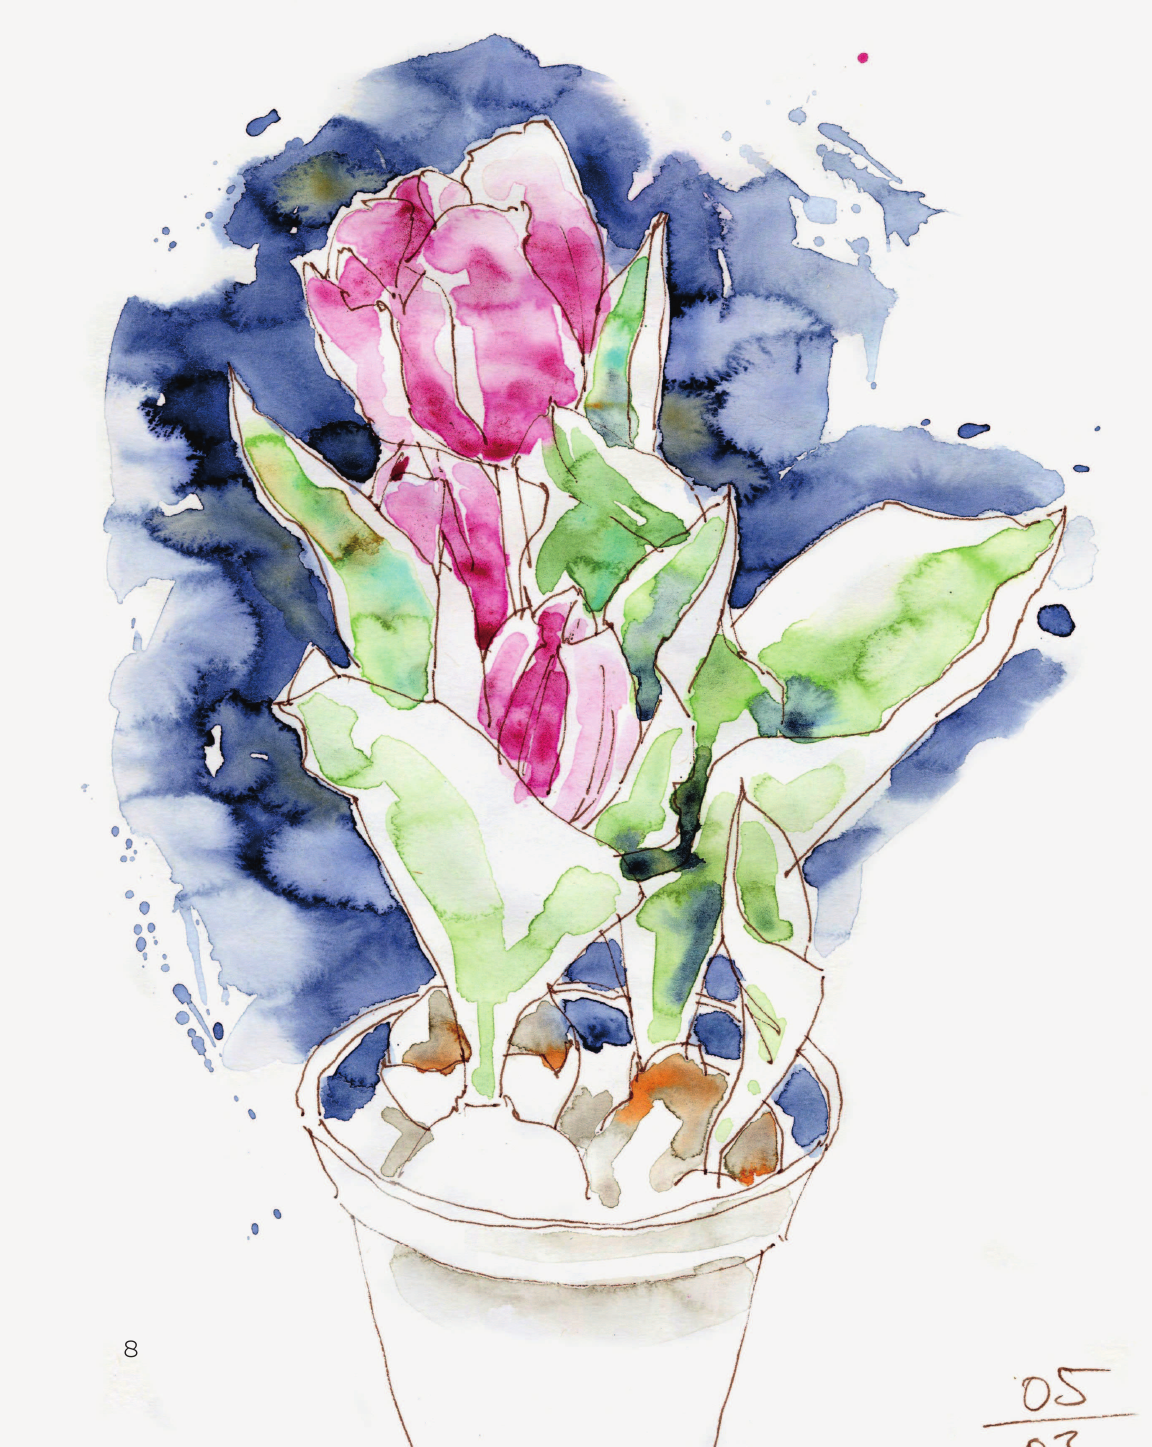 Цветочный скетчинг. Как создавать быстрые зарисовки цветов и растений - фото №10